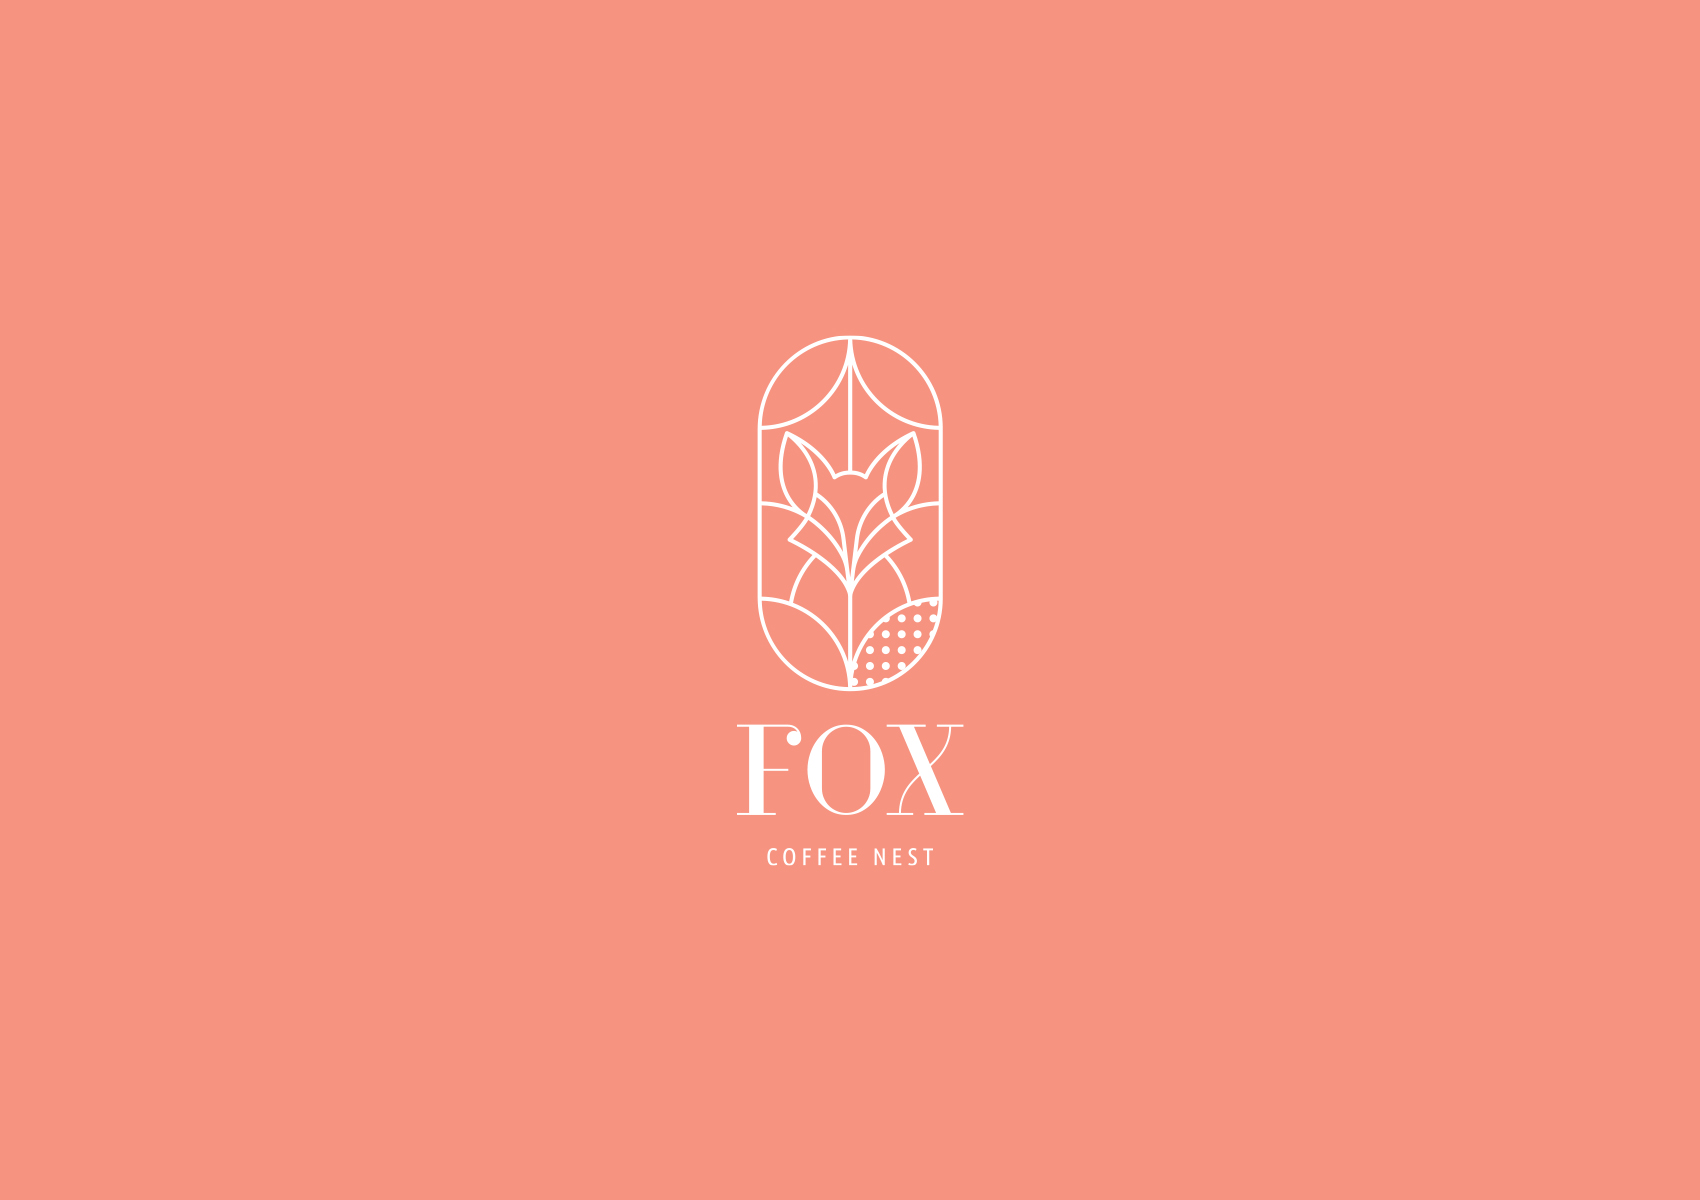 Fox coffee nest logo alternate 1700x1200 by xhristakis